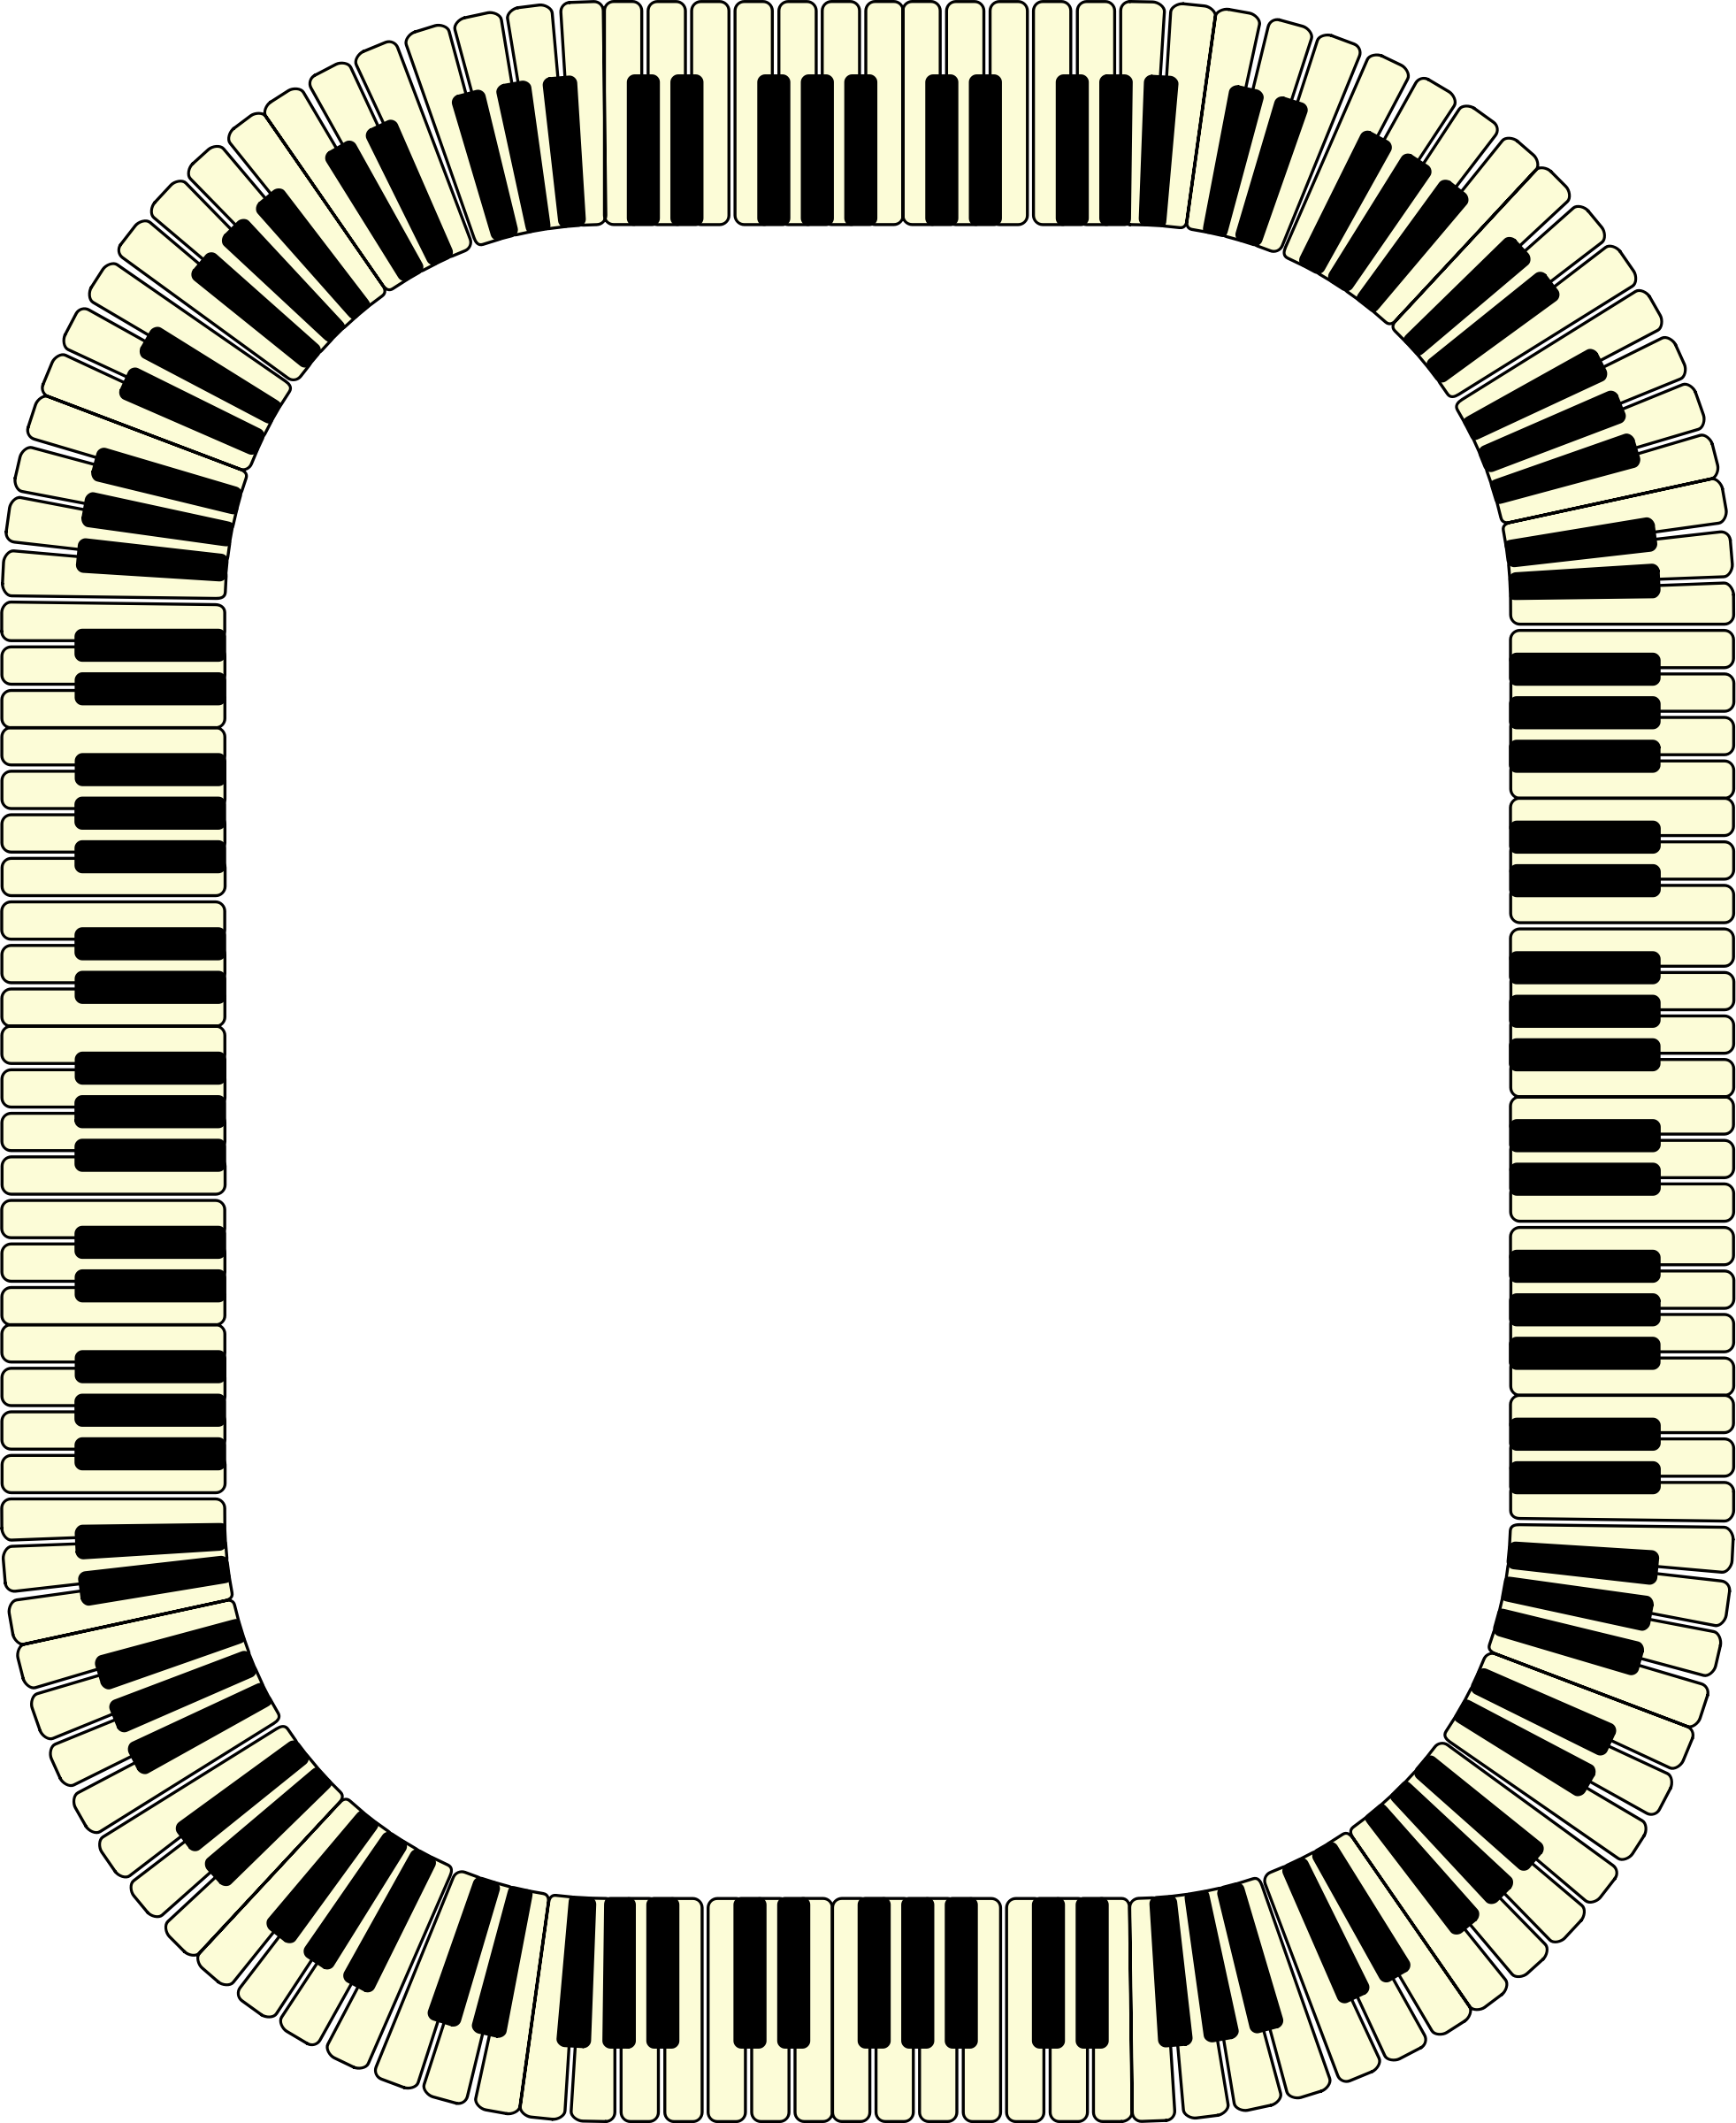 Piano frame